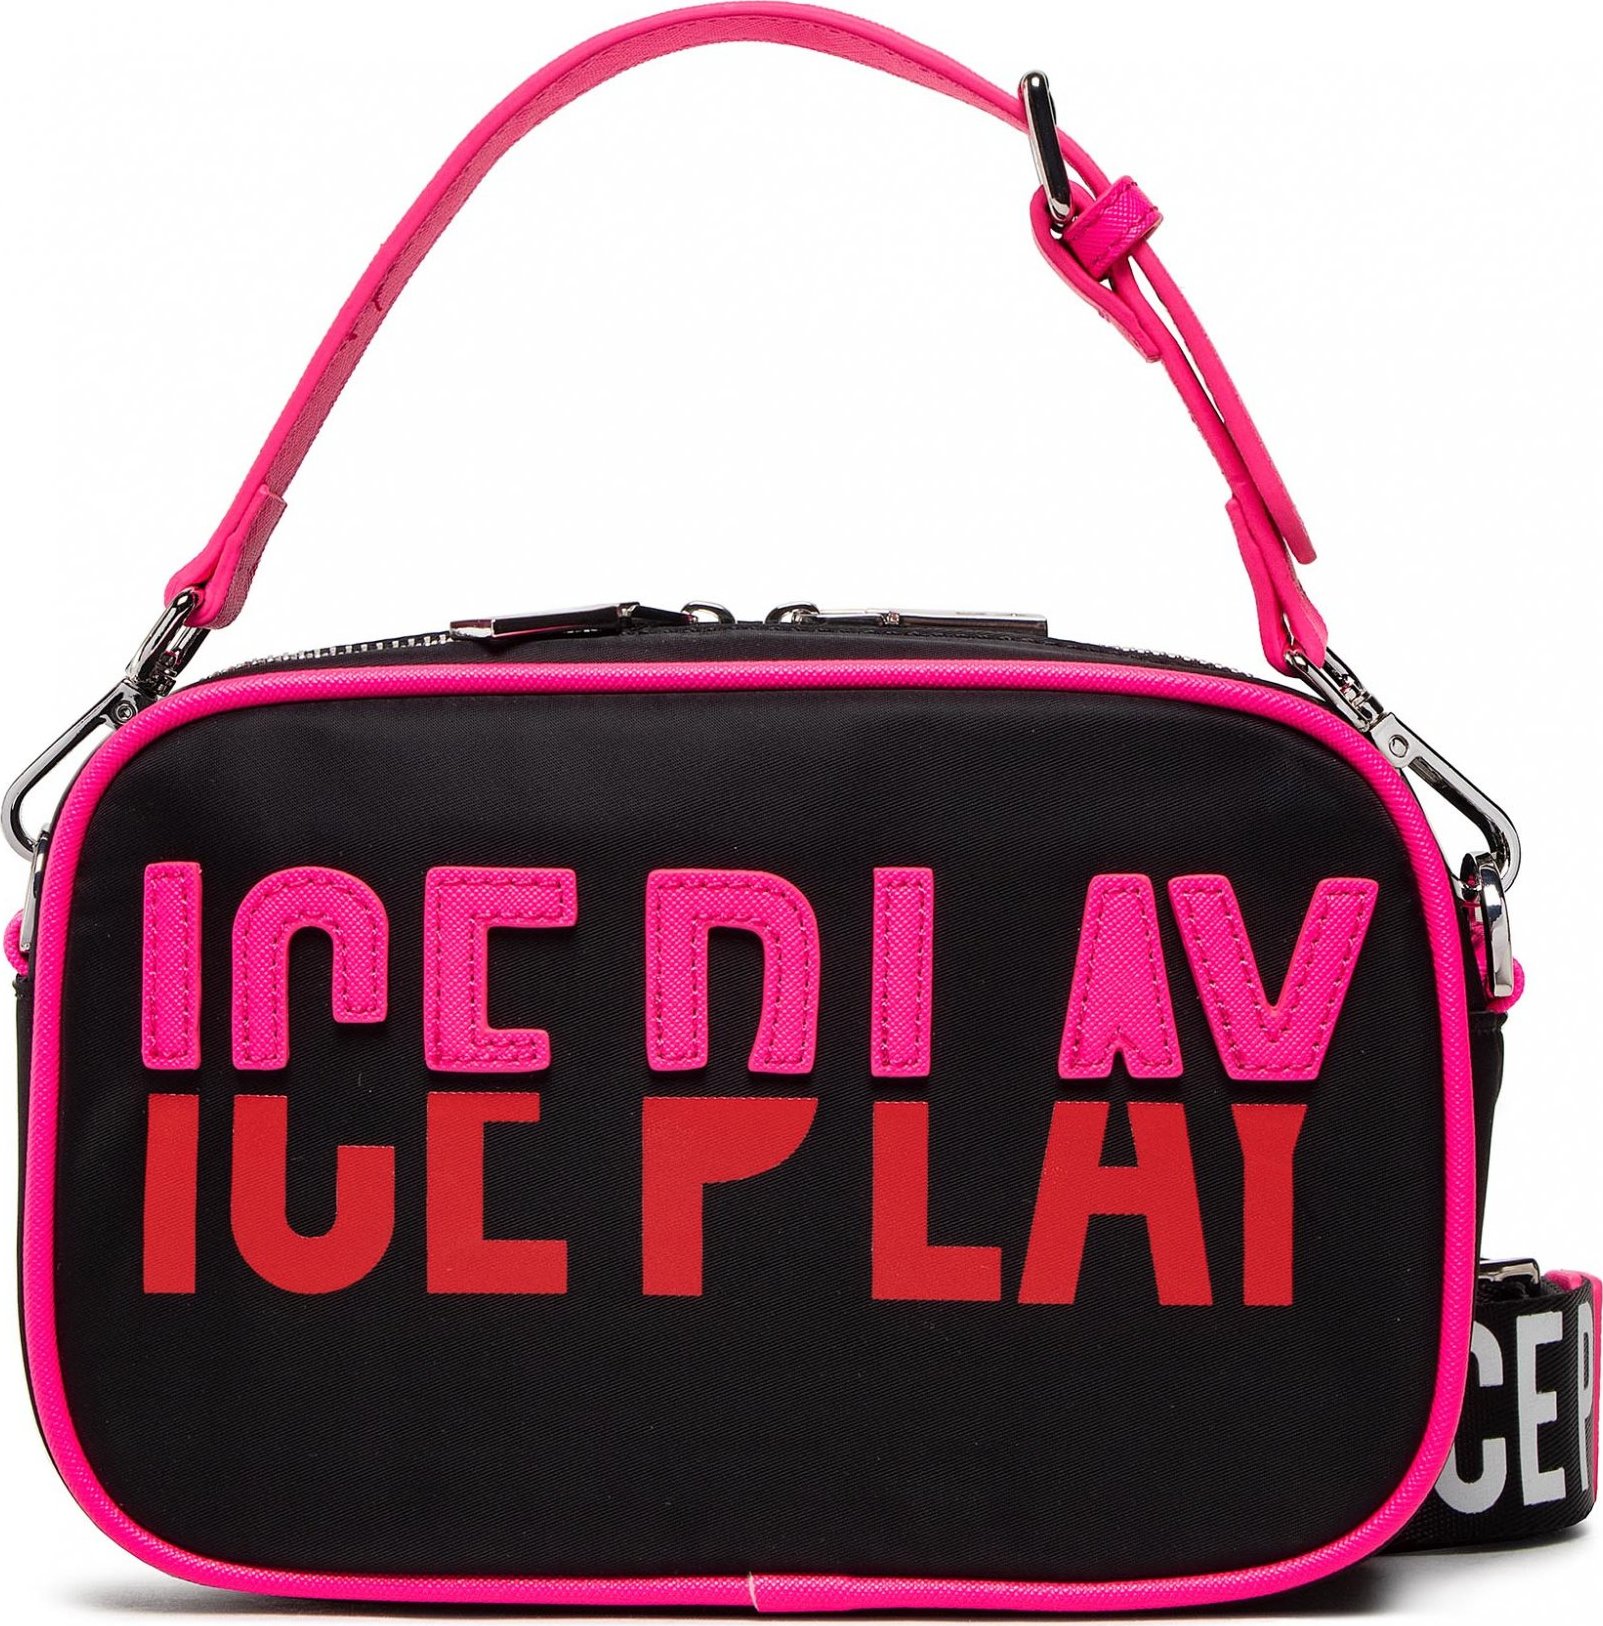 Ice Play 22I W2M1 7220 6932 U9C1